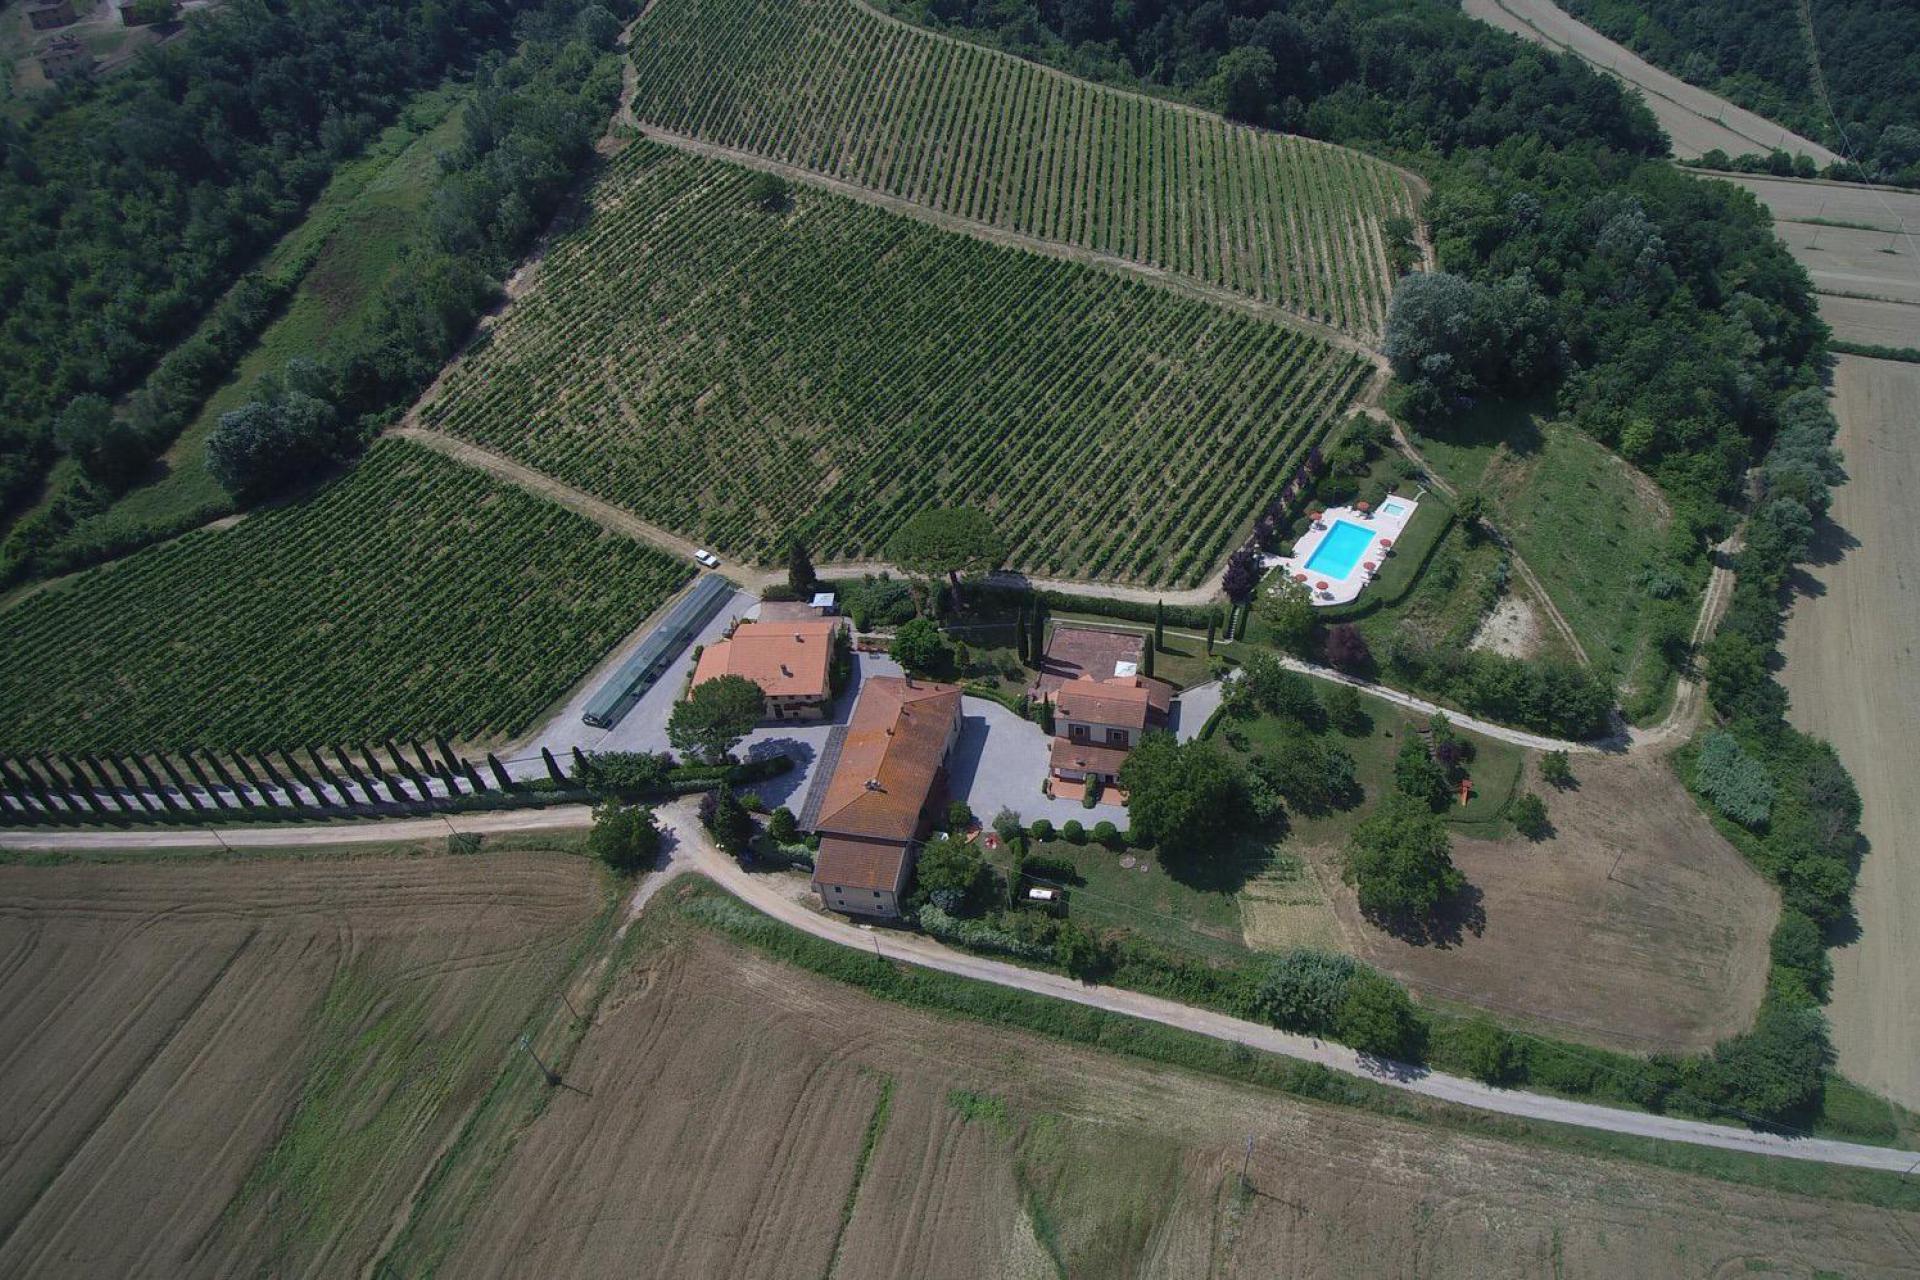 Agriturismo Toscane Agriturismo voor gezinnen met ruim zwembad en kinderbad